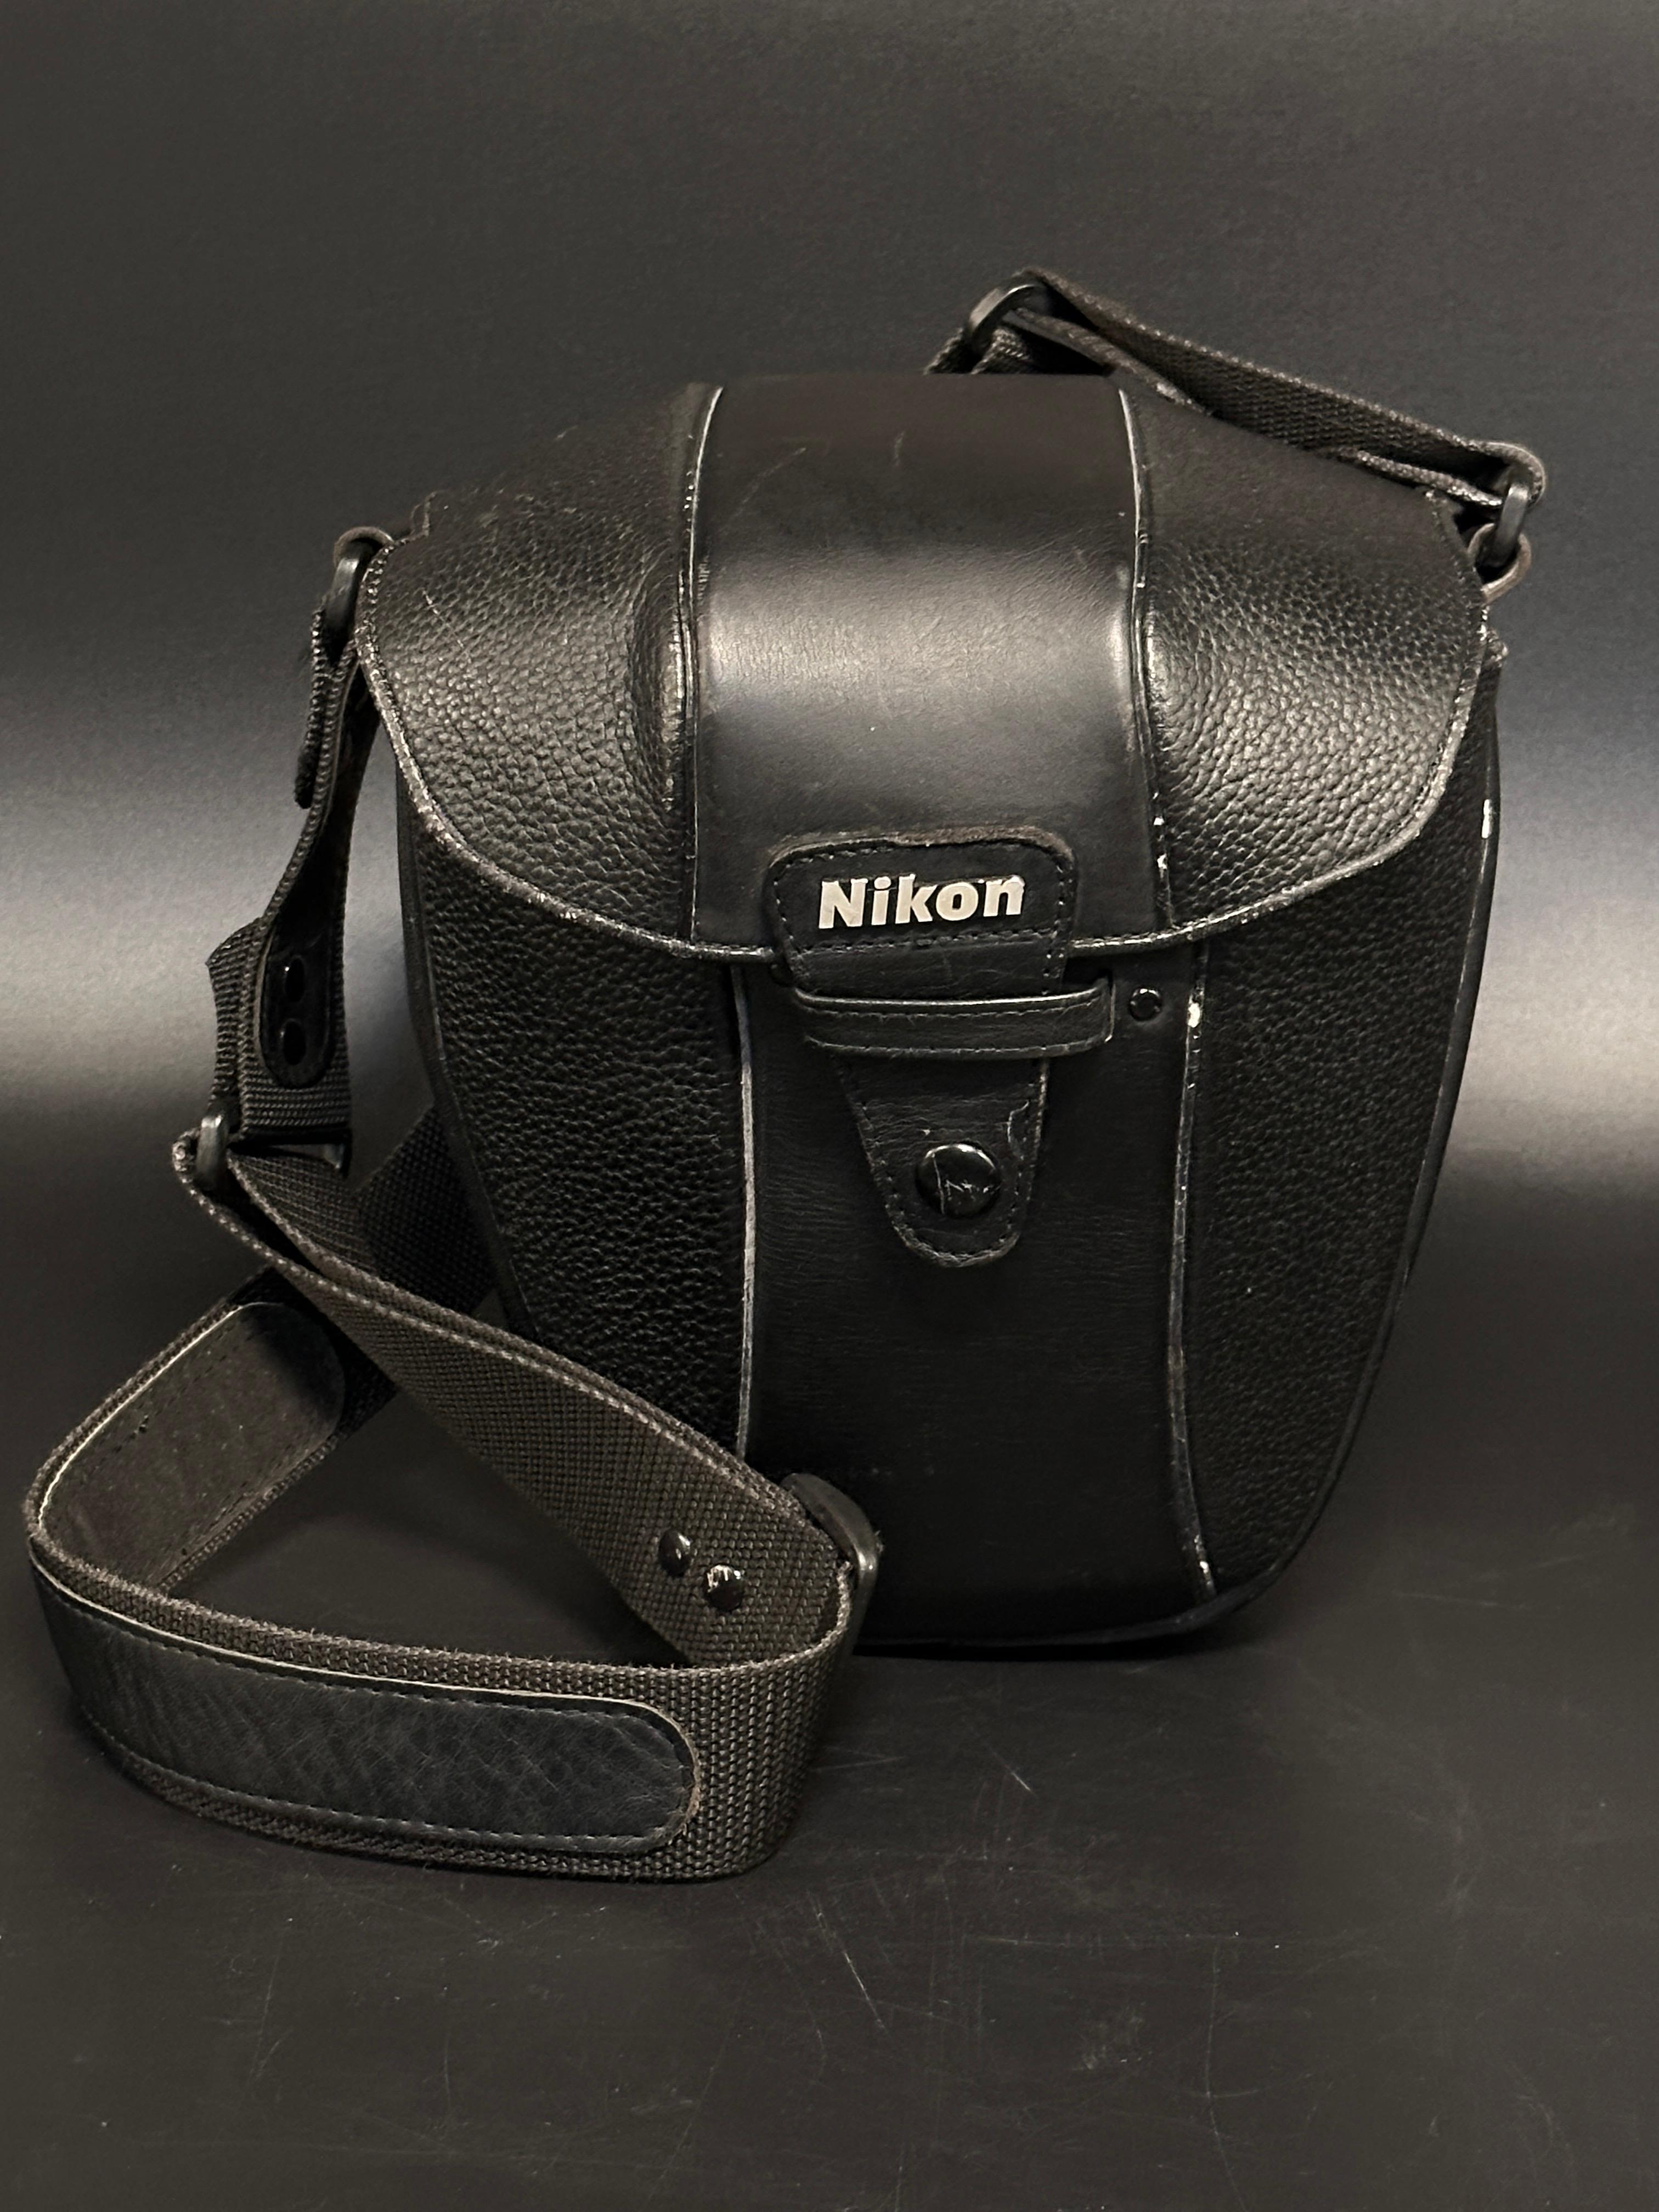 Nikon F4 Camera and More